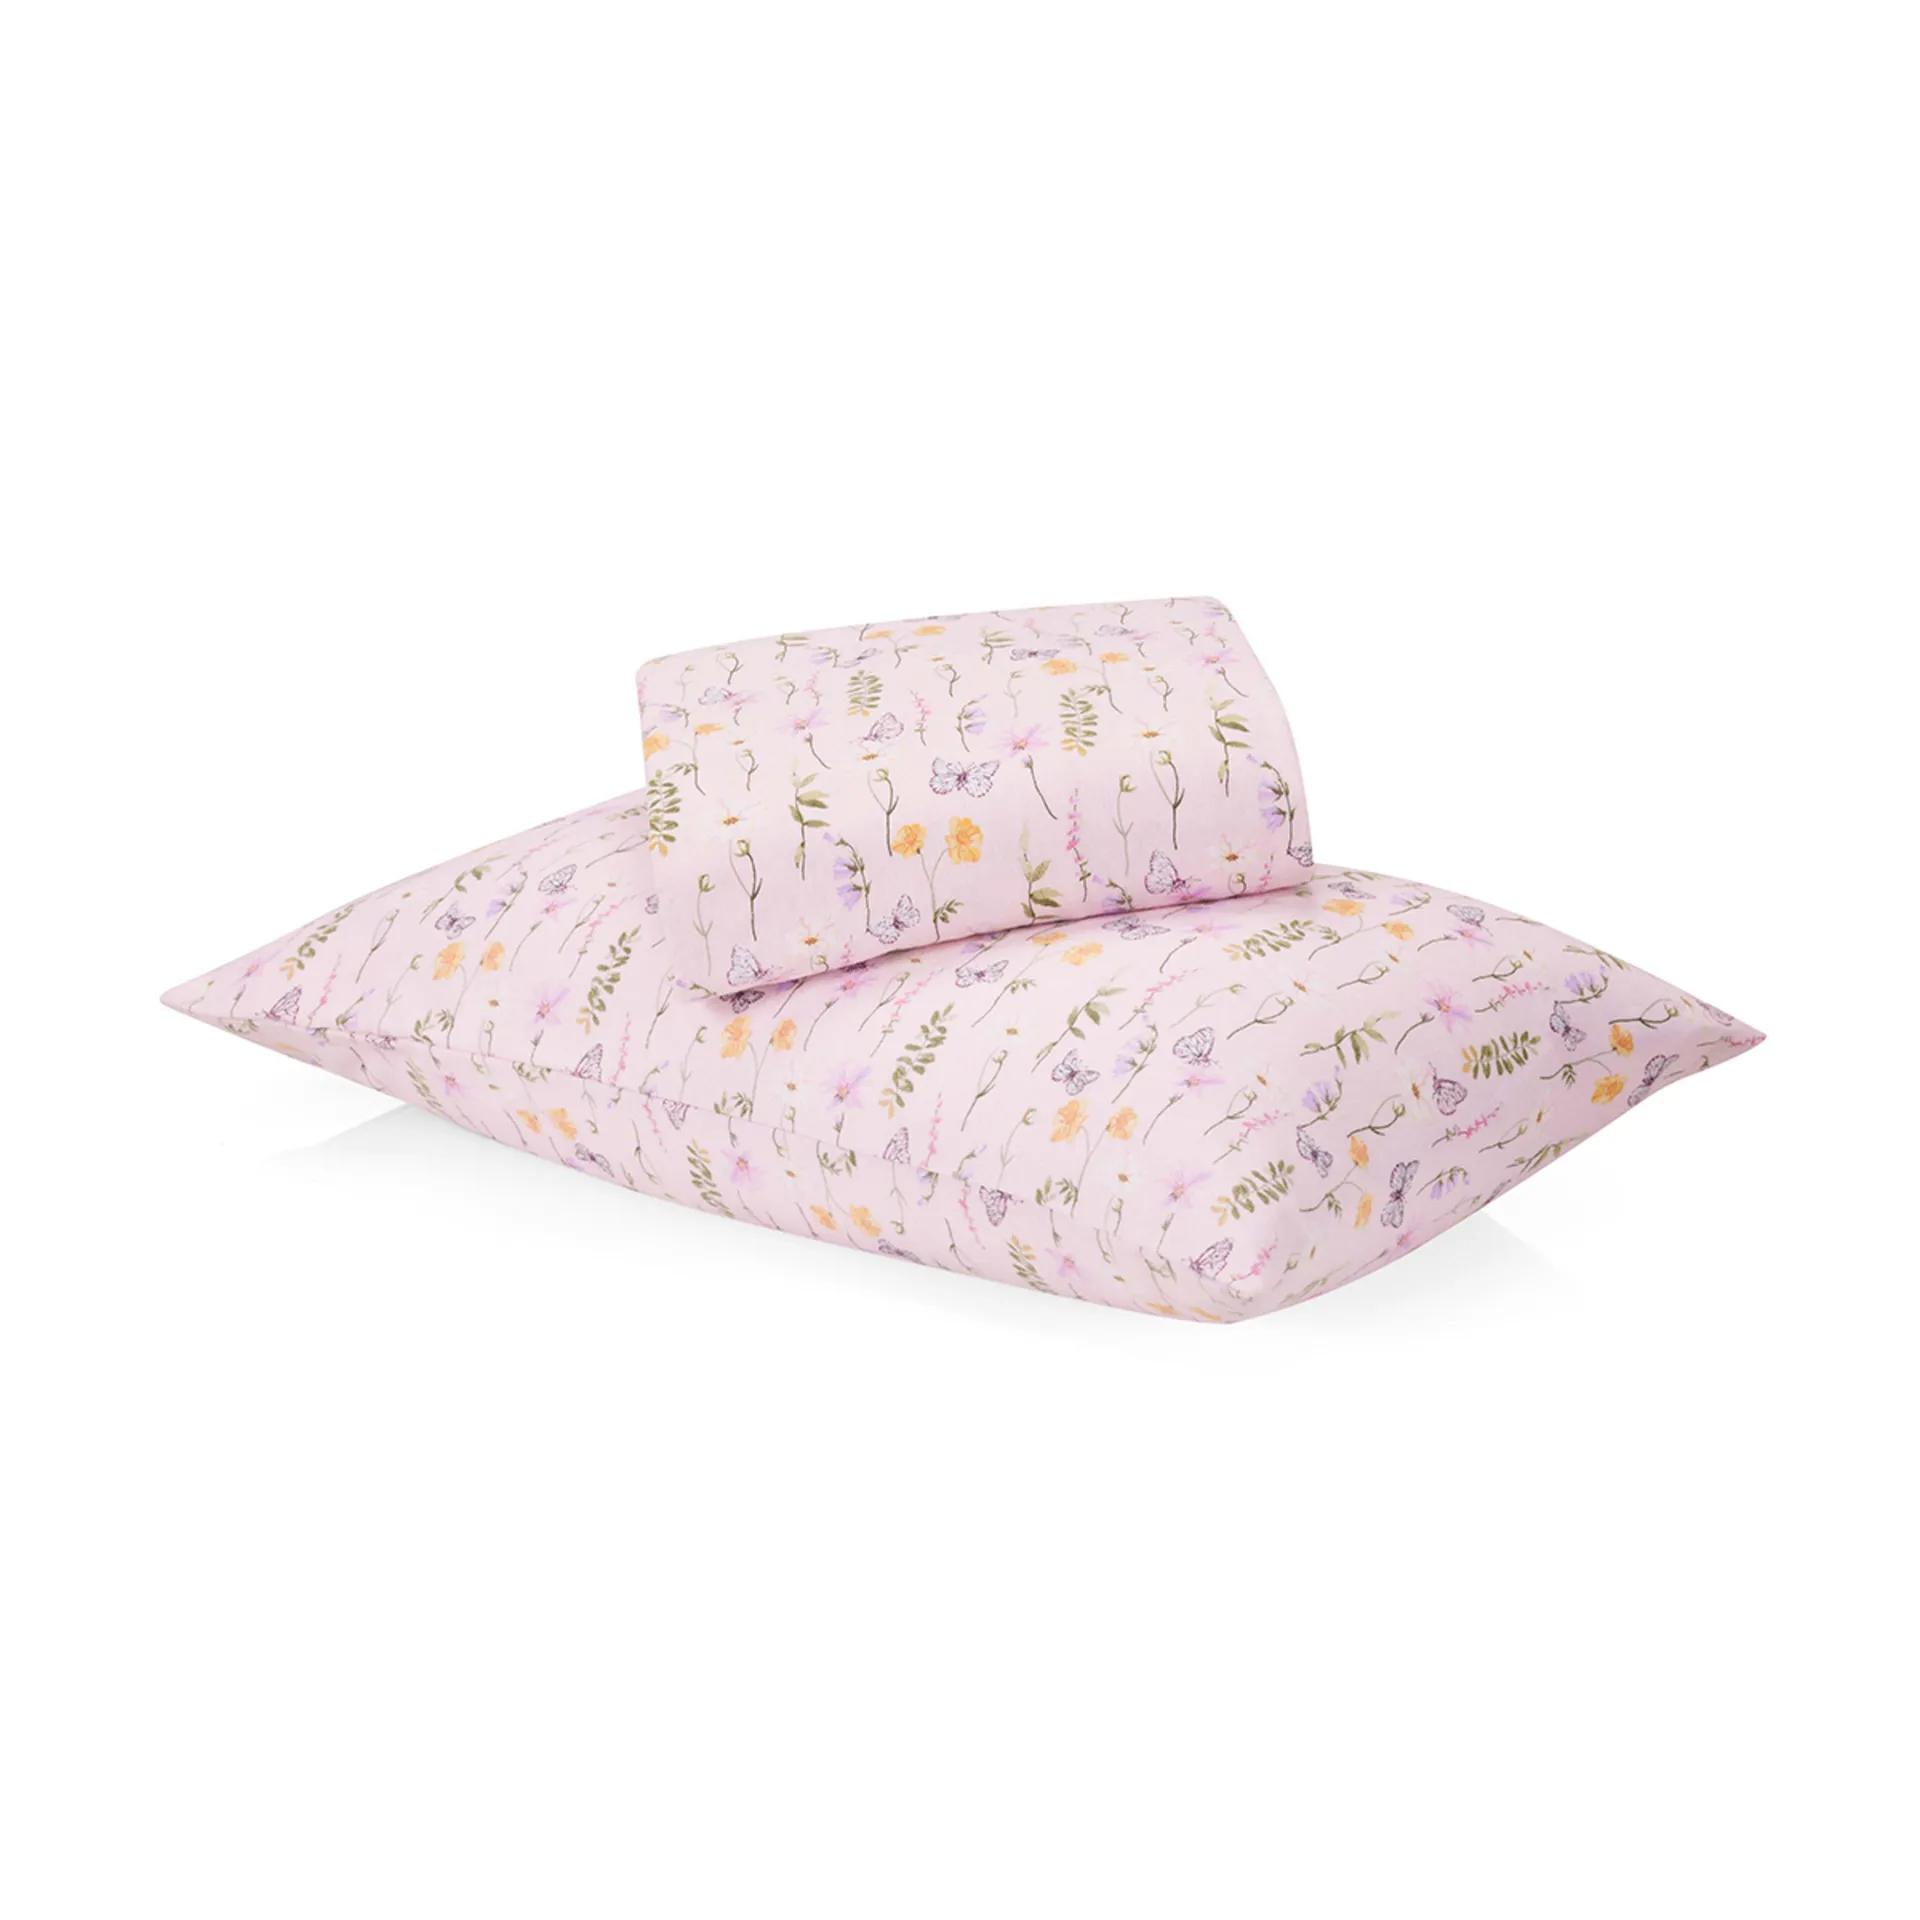 Floral Cotton Flannelette Sheet Set - Single Bed